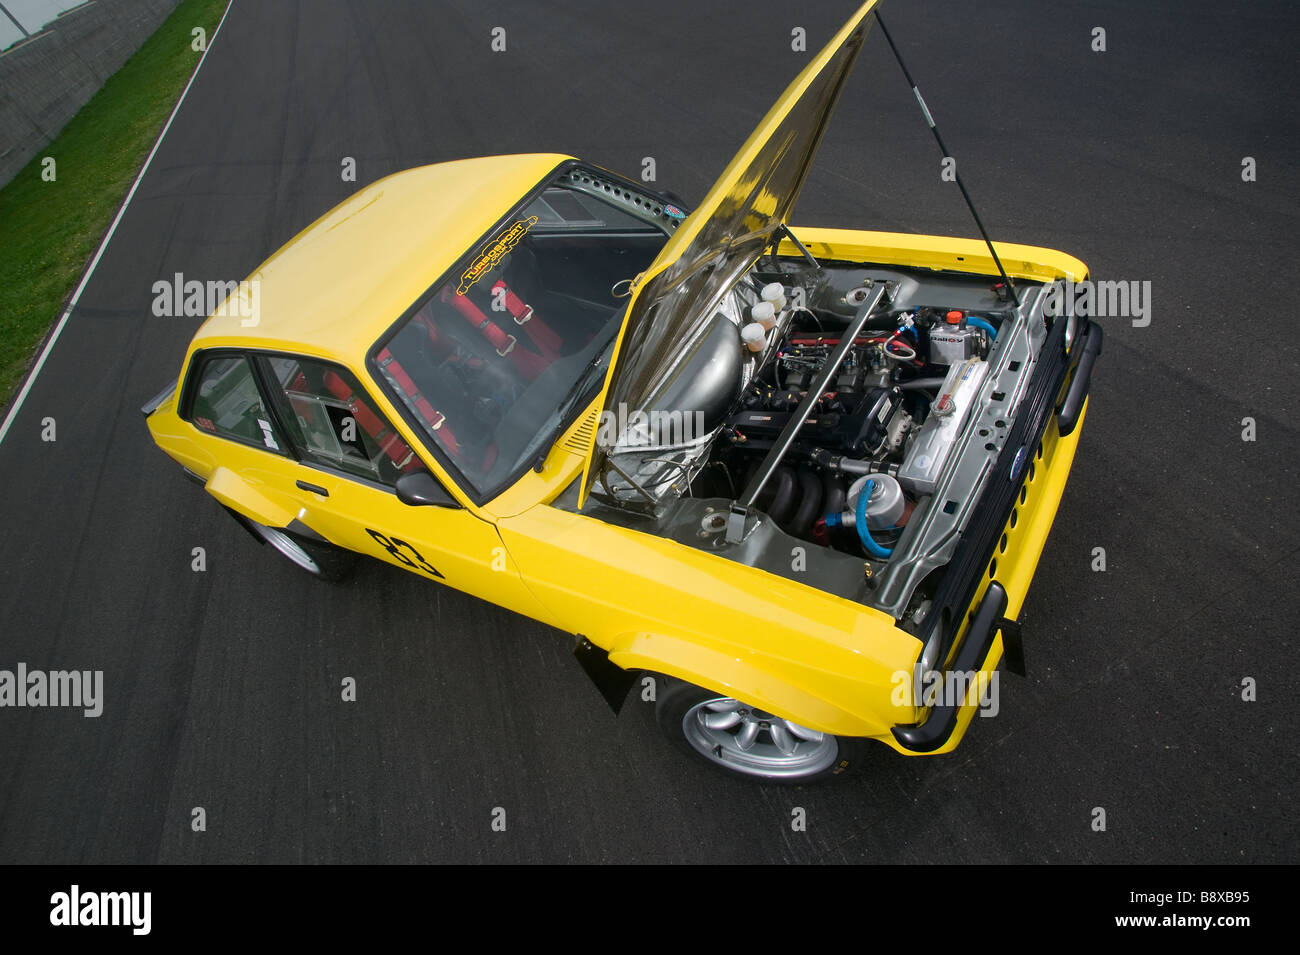 Ford Escort markieren zwei Rennwagen Stockfoto